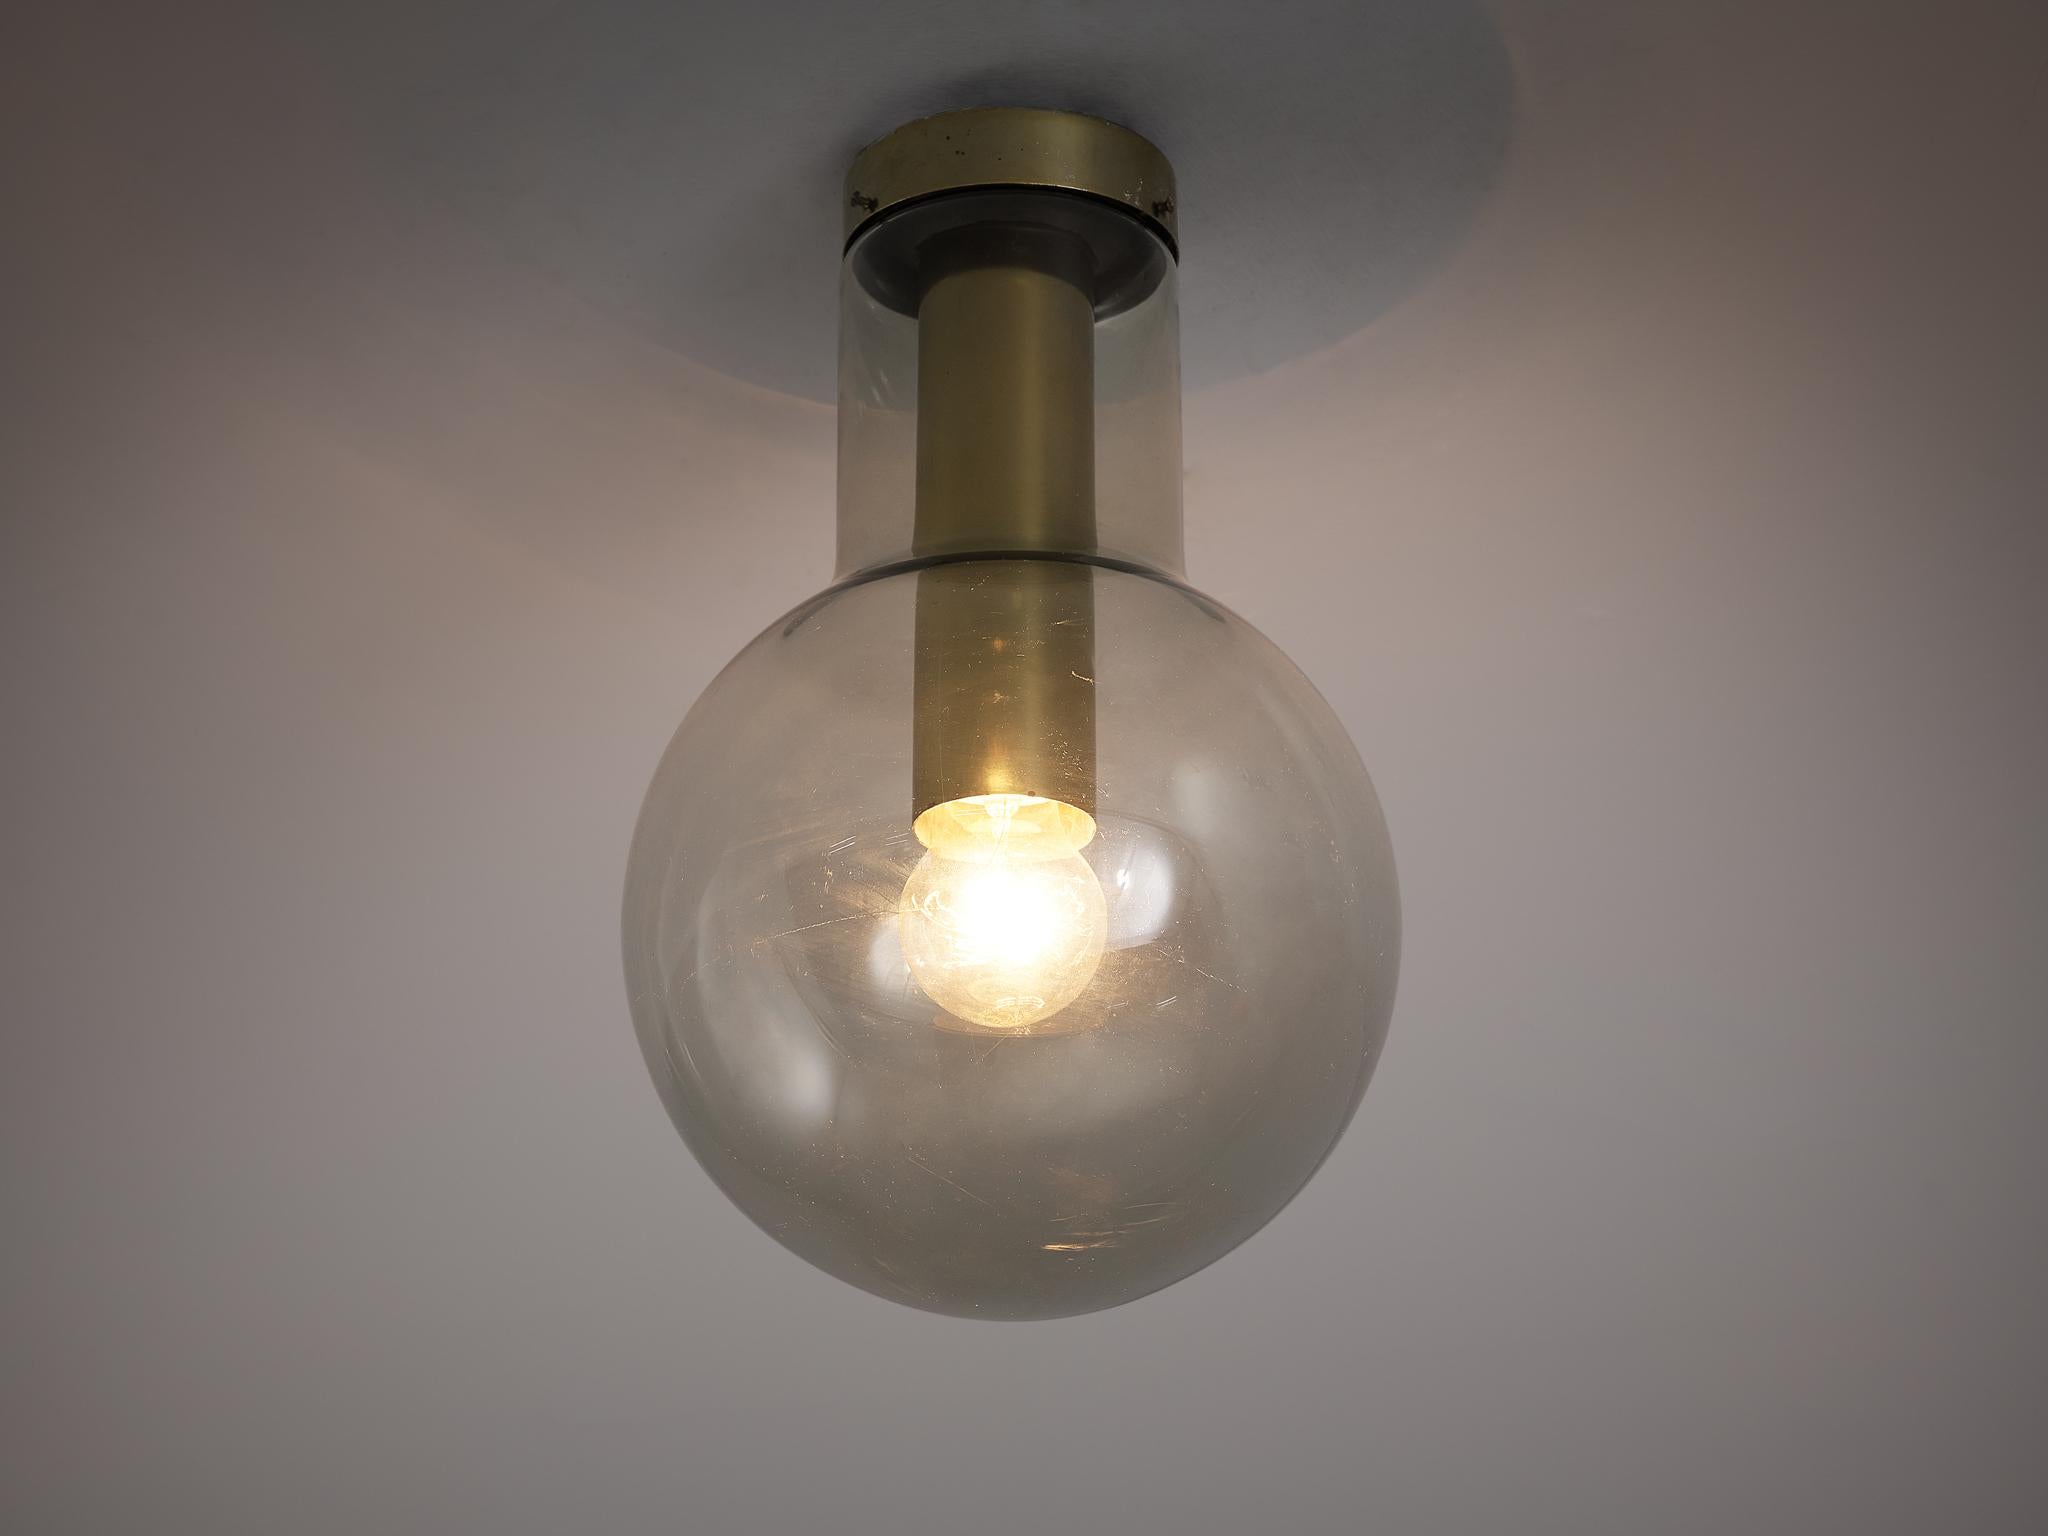 RAAK Amsterdam, plafonnier modèle 'Maxi-Light Bulb' B-1260, laiton, verre fumé, Pays-Bas, années 1960.

RAAK a créé une lampe amusante en construisant une ampoule autour d'une ampoule. Un design distinctif est créé par la mise en place d'une